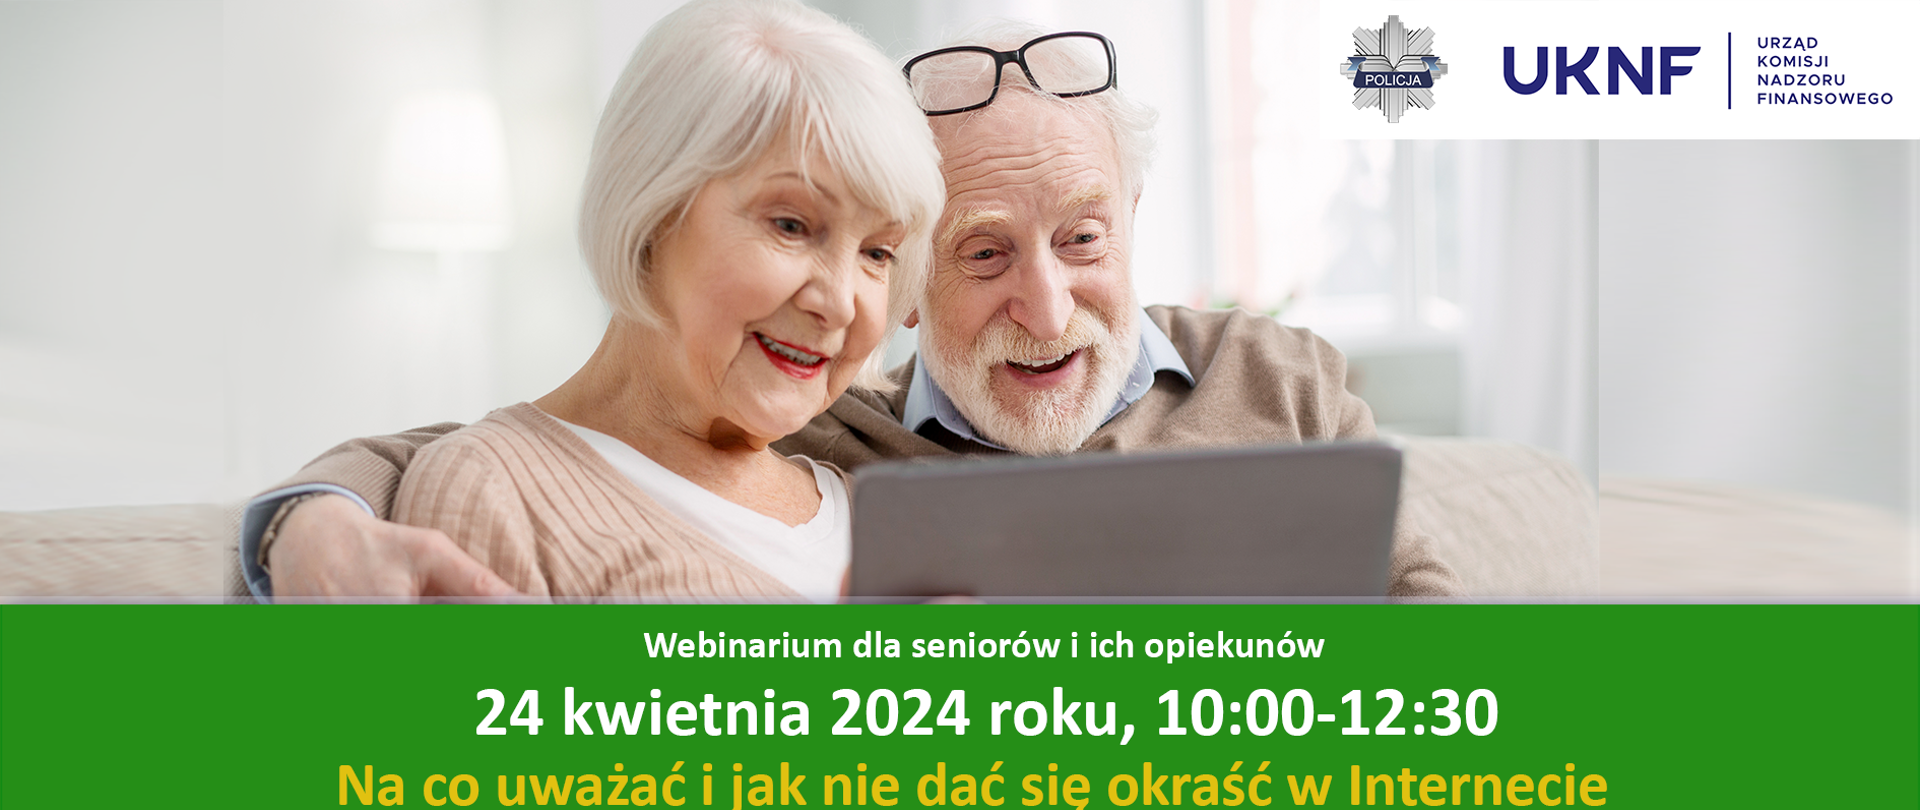 Webinarium dla seniorów